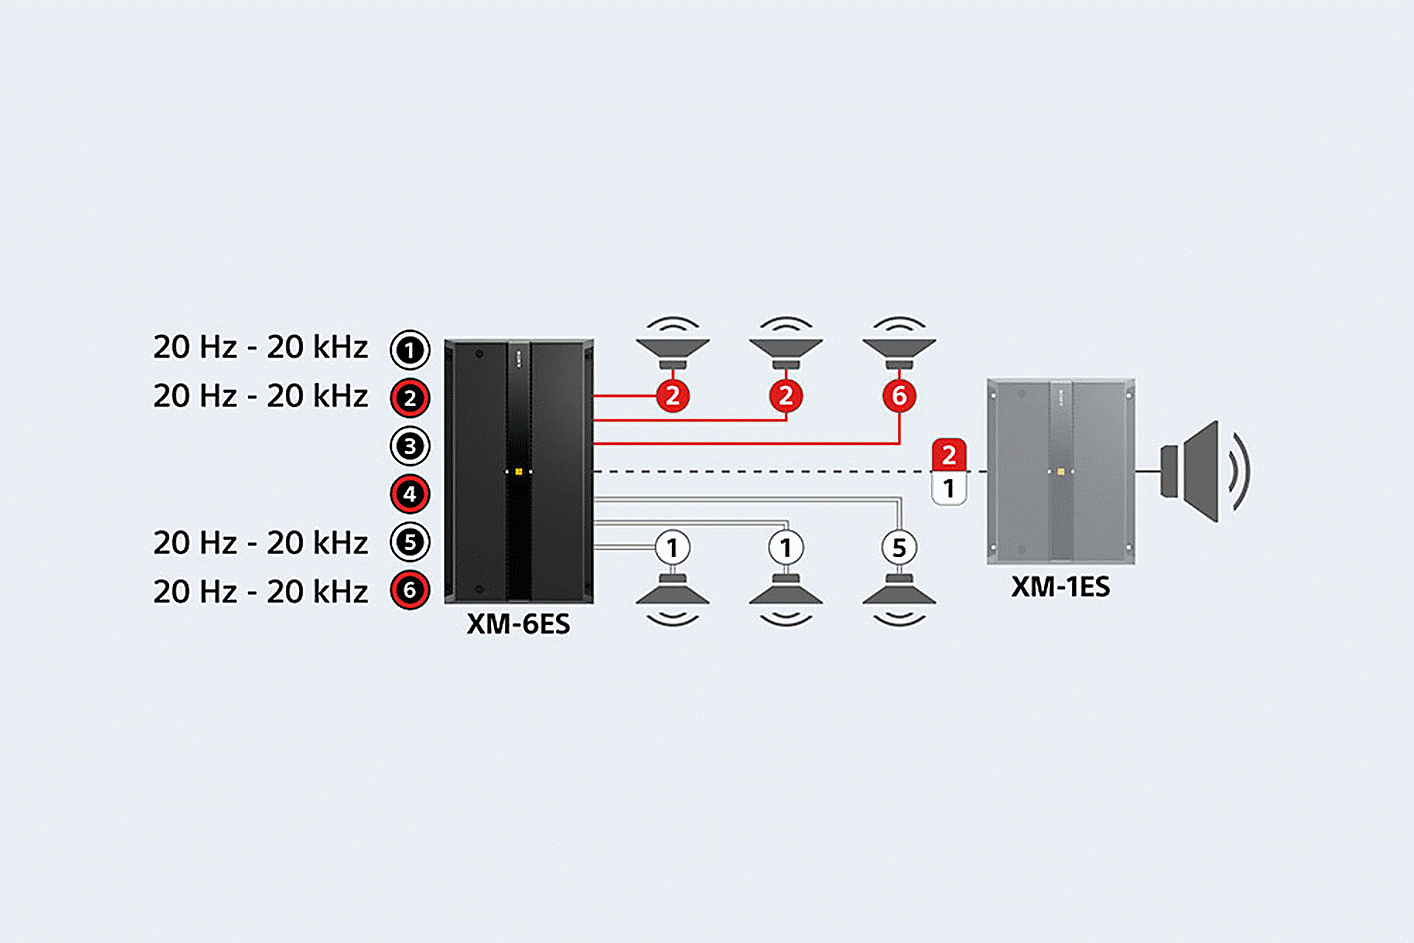 Diagram XM-6ES terhubung ke enam speaker dan XM-1ES, setelan suara ditampilkan di sebelah port 1, 2, 5, & 6